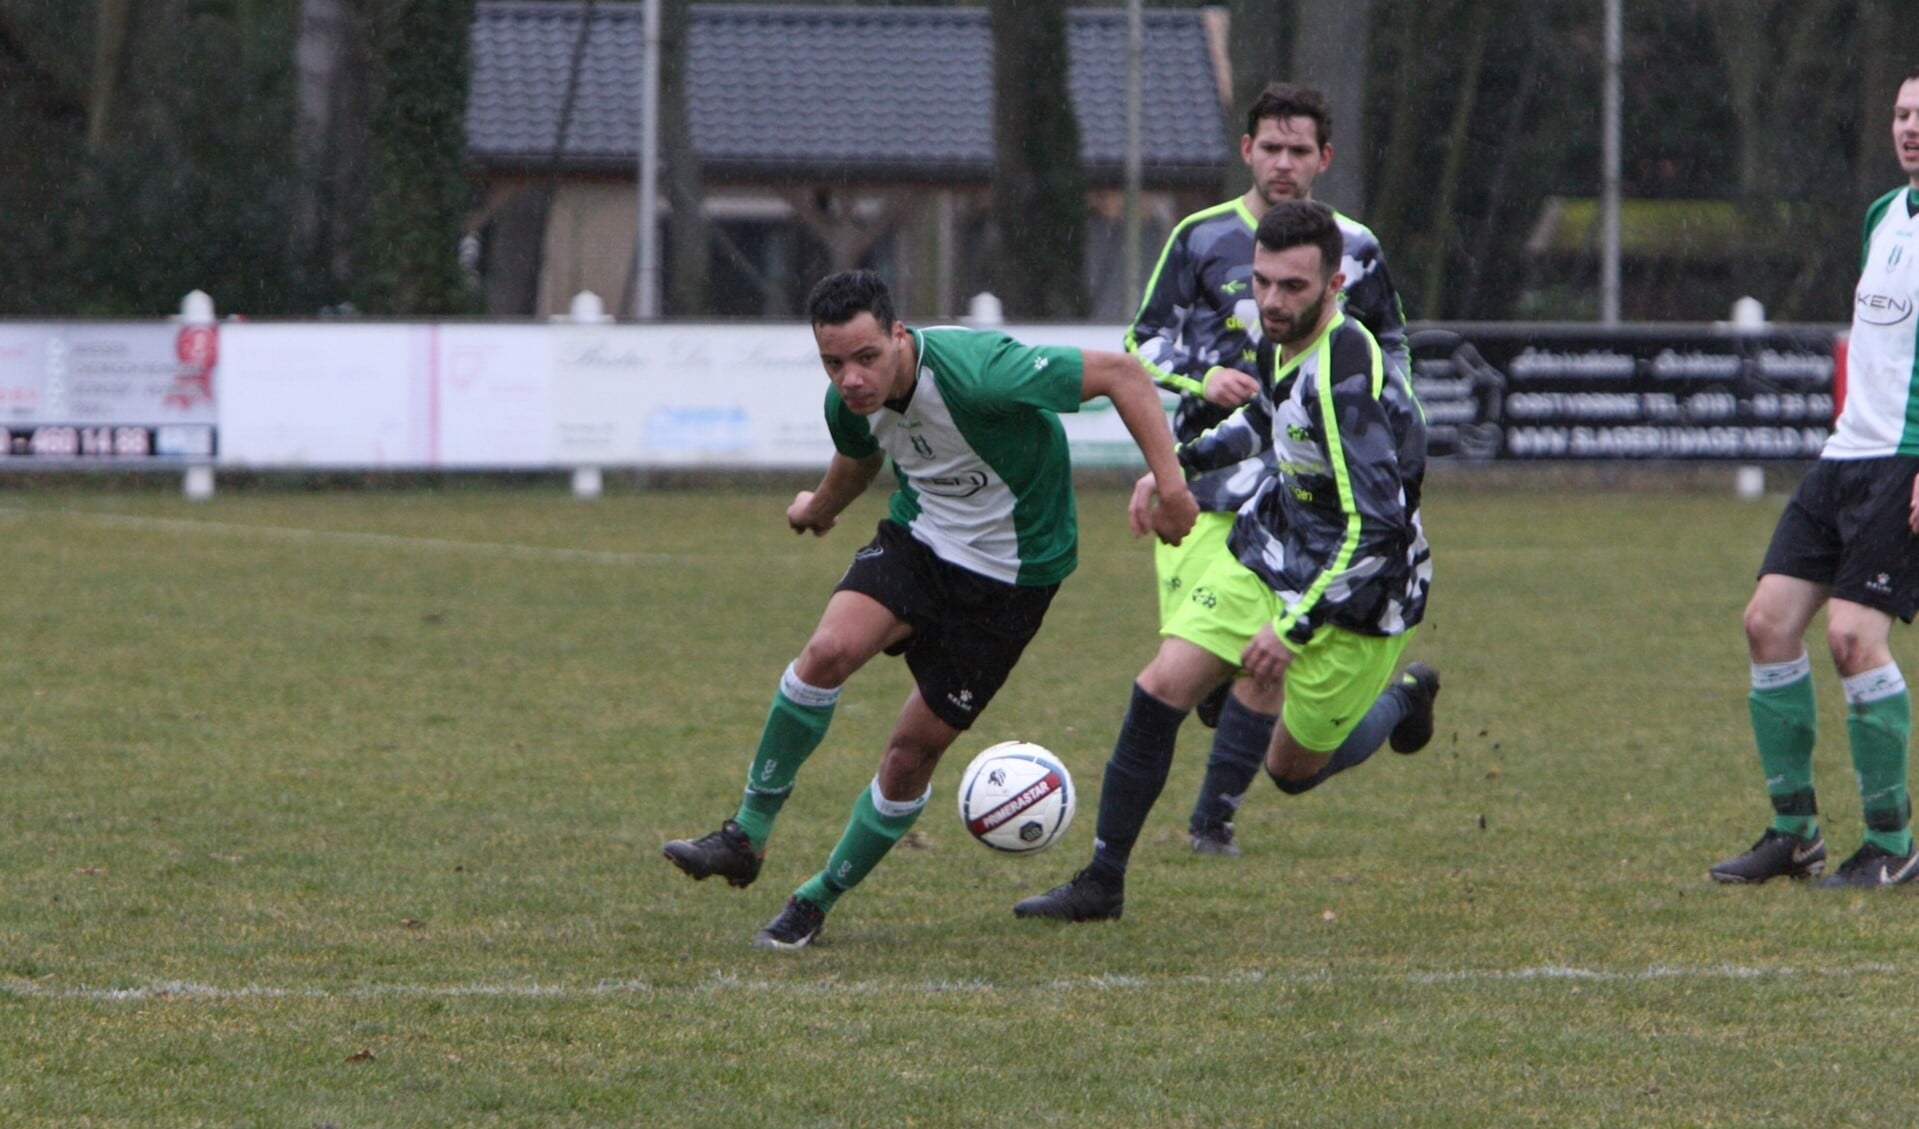 Andrë Breinburg scoorde voor OVV in de uitwedstrijd bij Piershil. (Archieffoto: Wil van Balen).